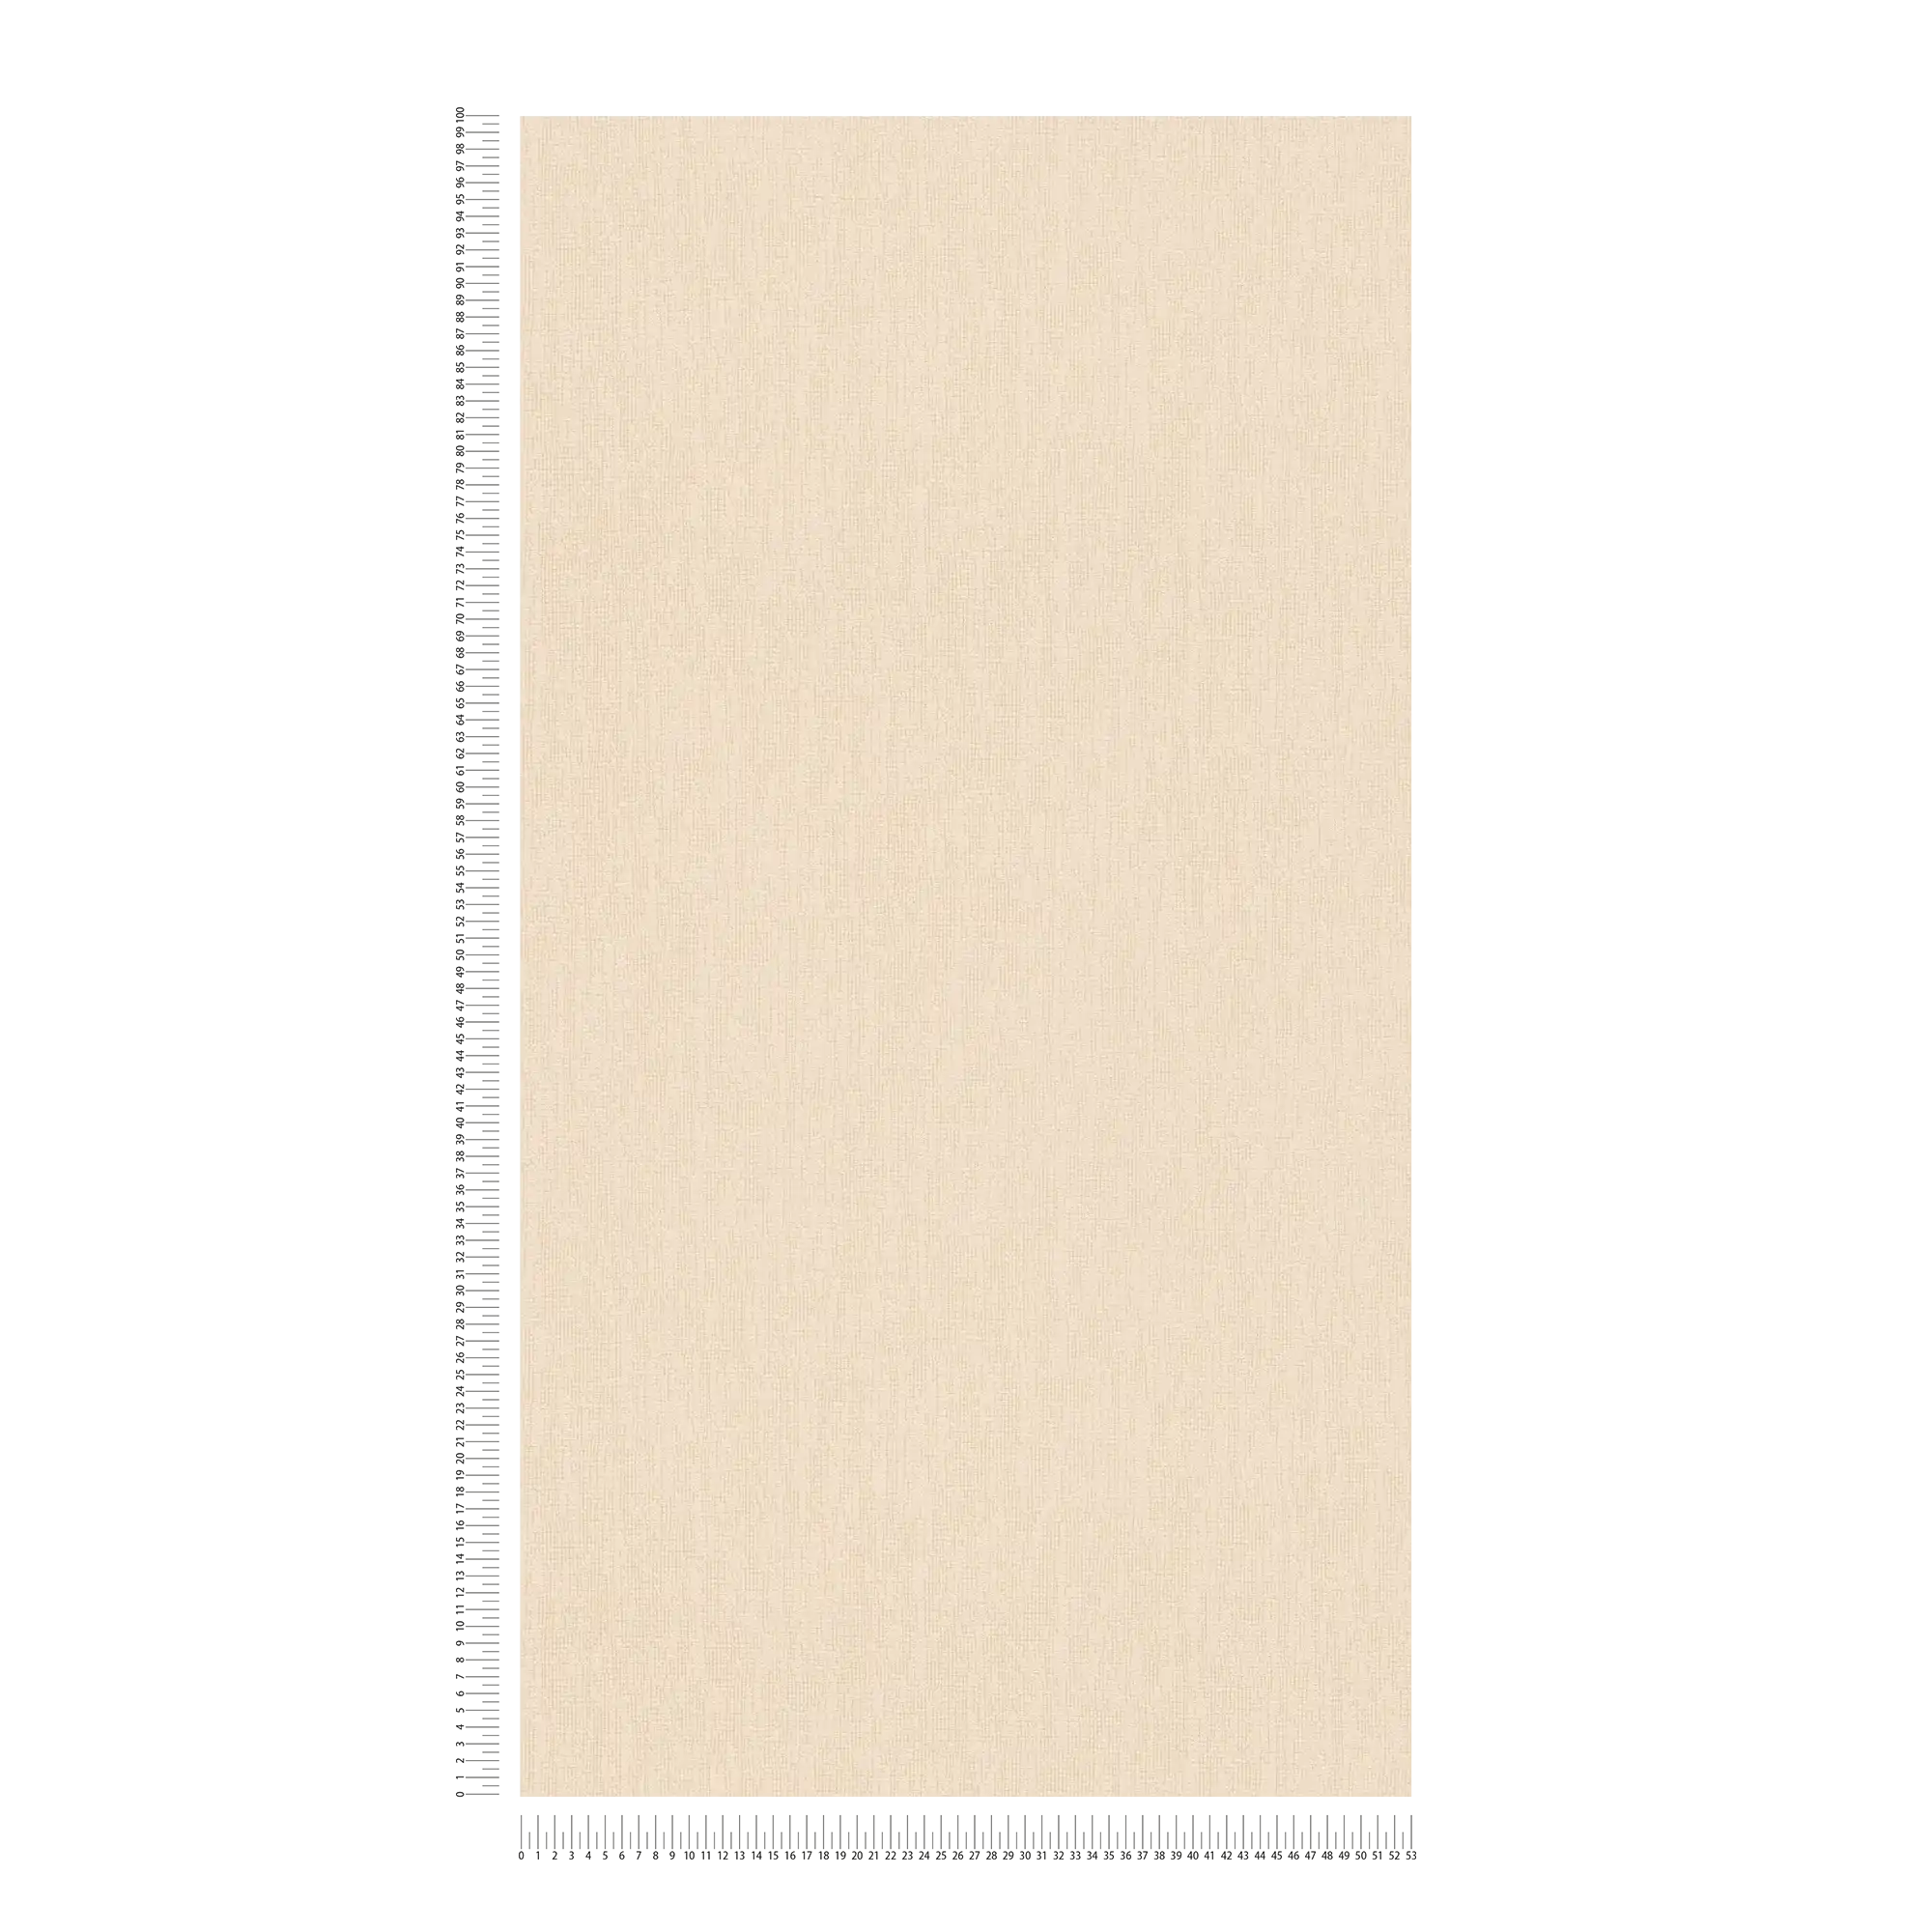             Carta da parati beige monocromatica con dettagli strutturali in stile scandi
        